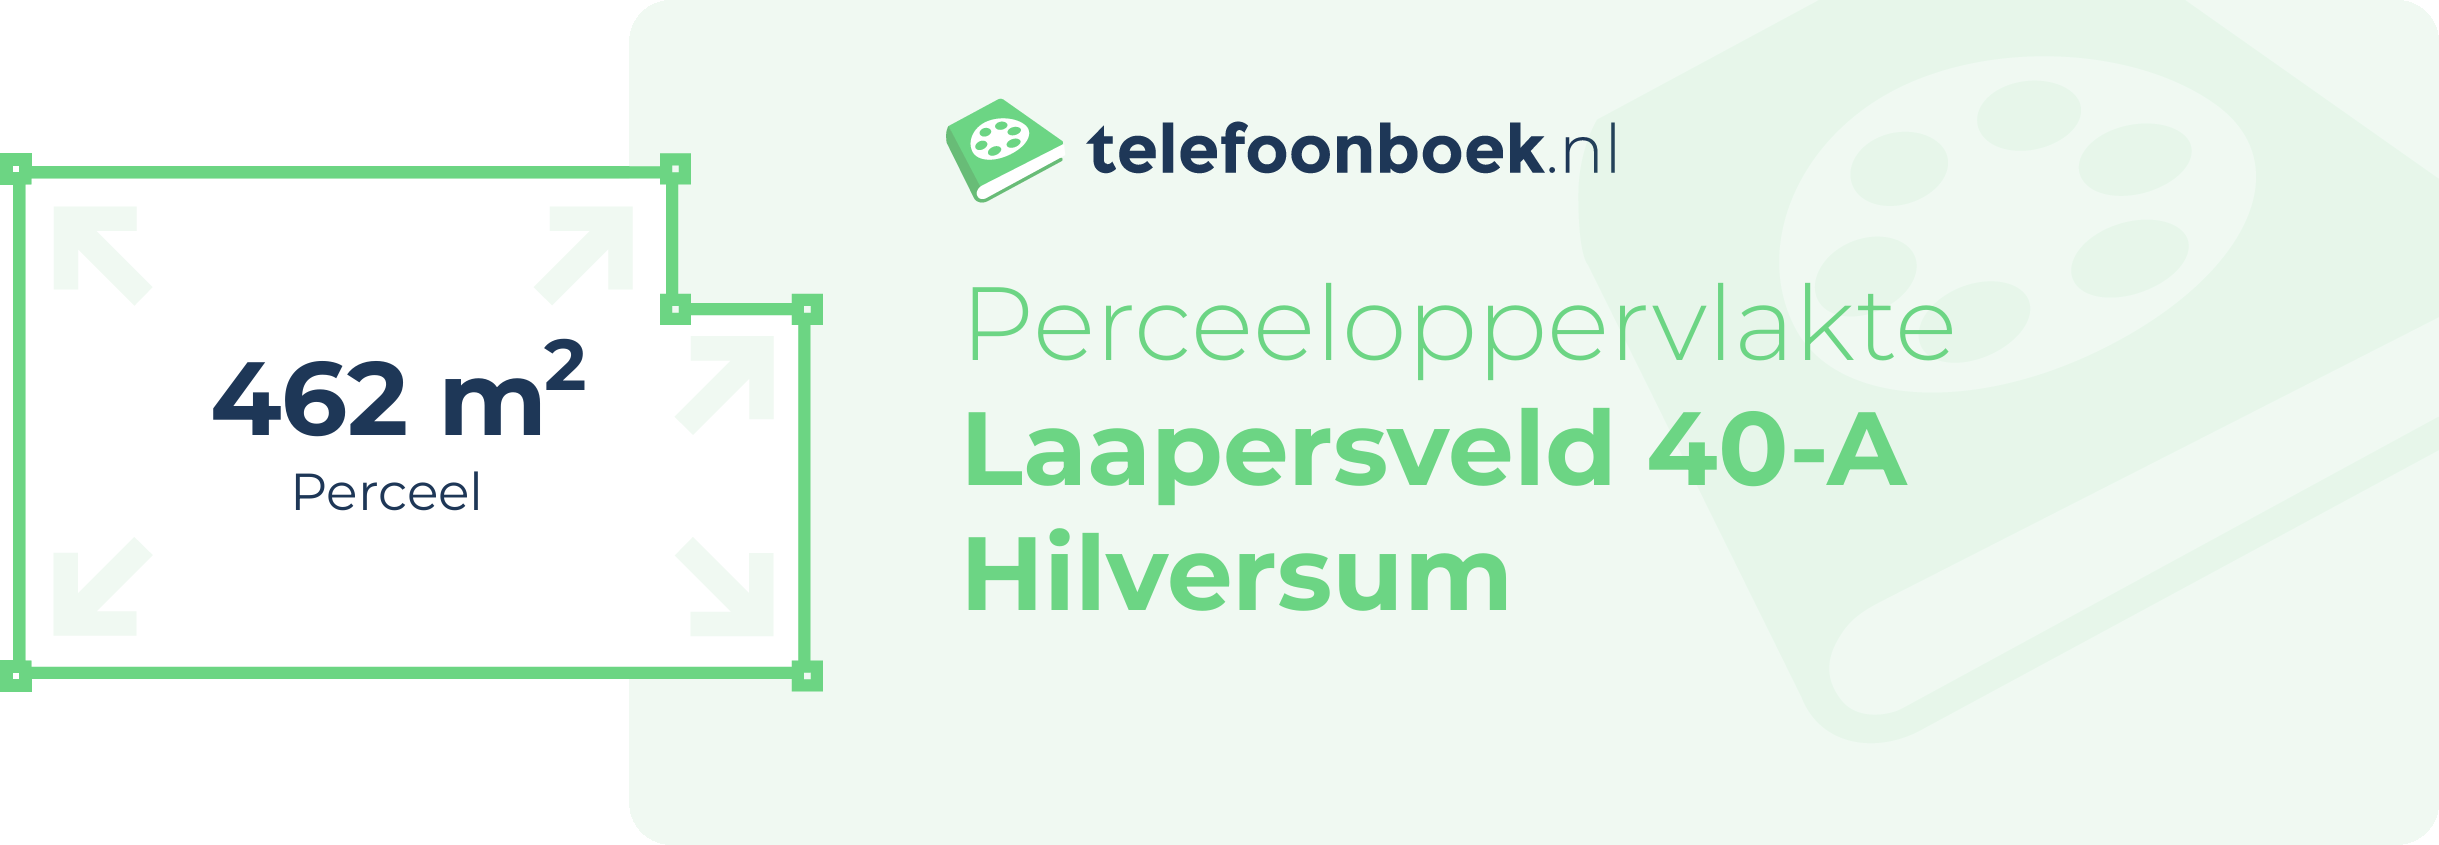 Perceeloppervlakte Laapersveld 40-A Hilversum